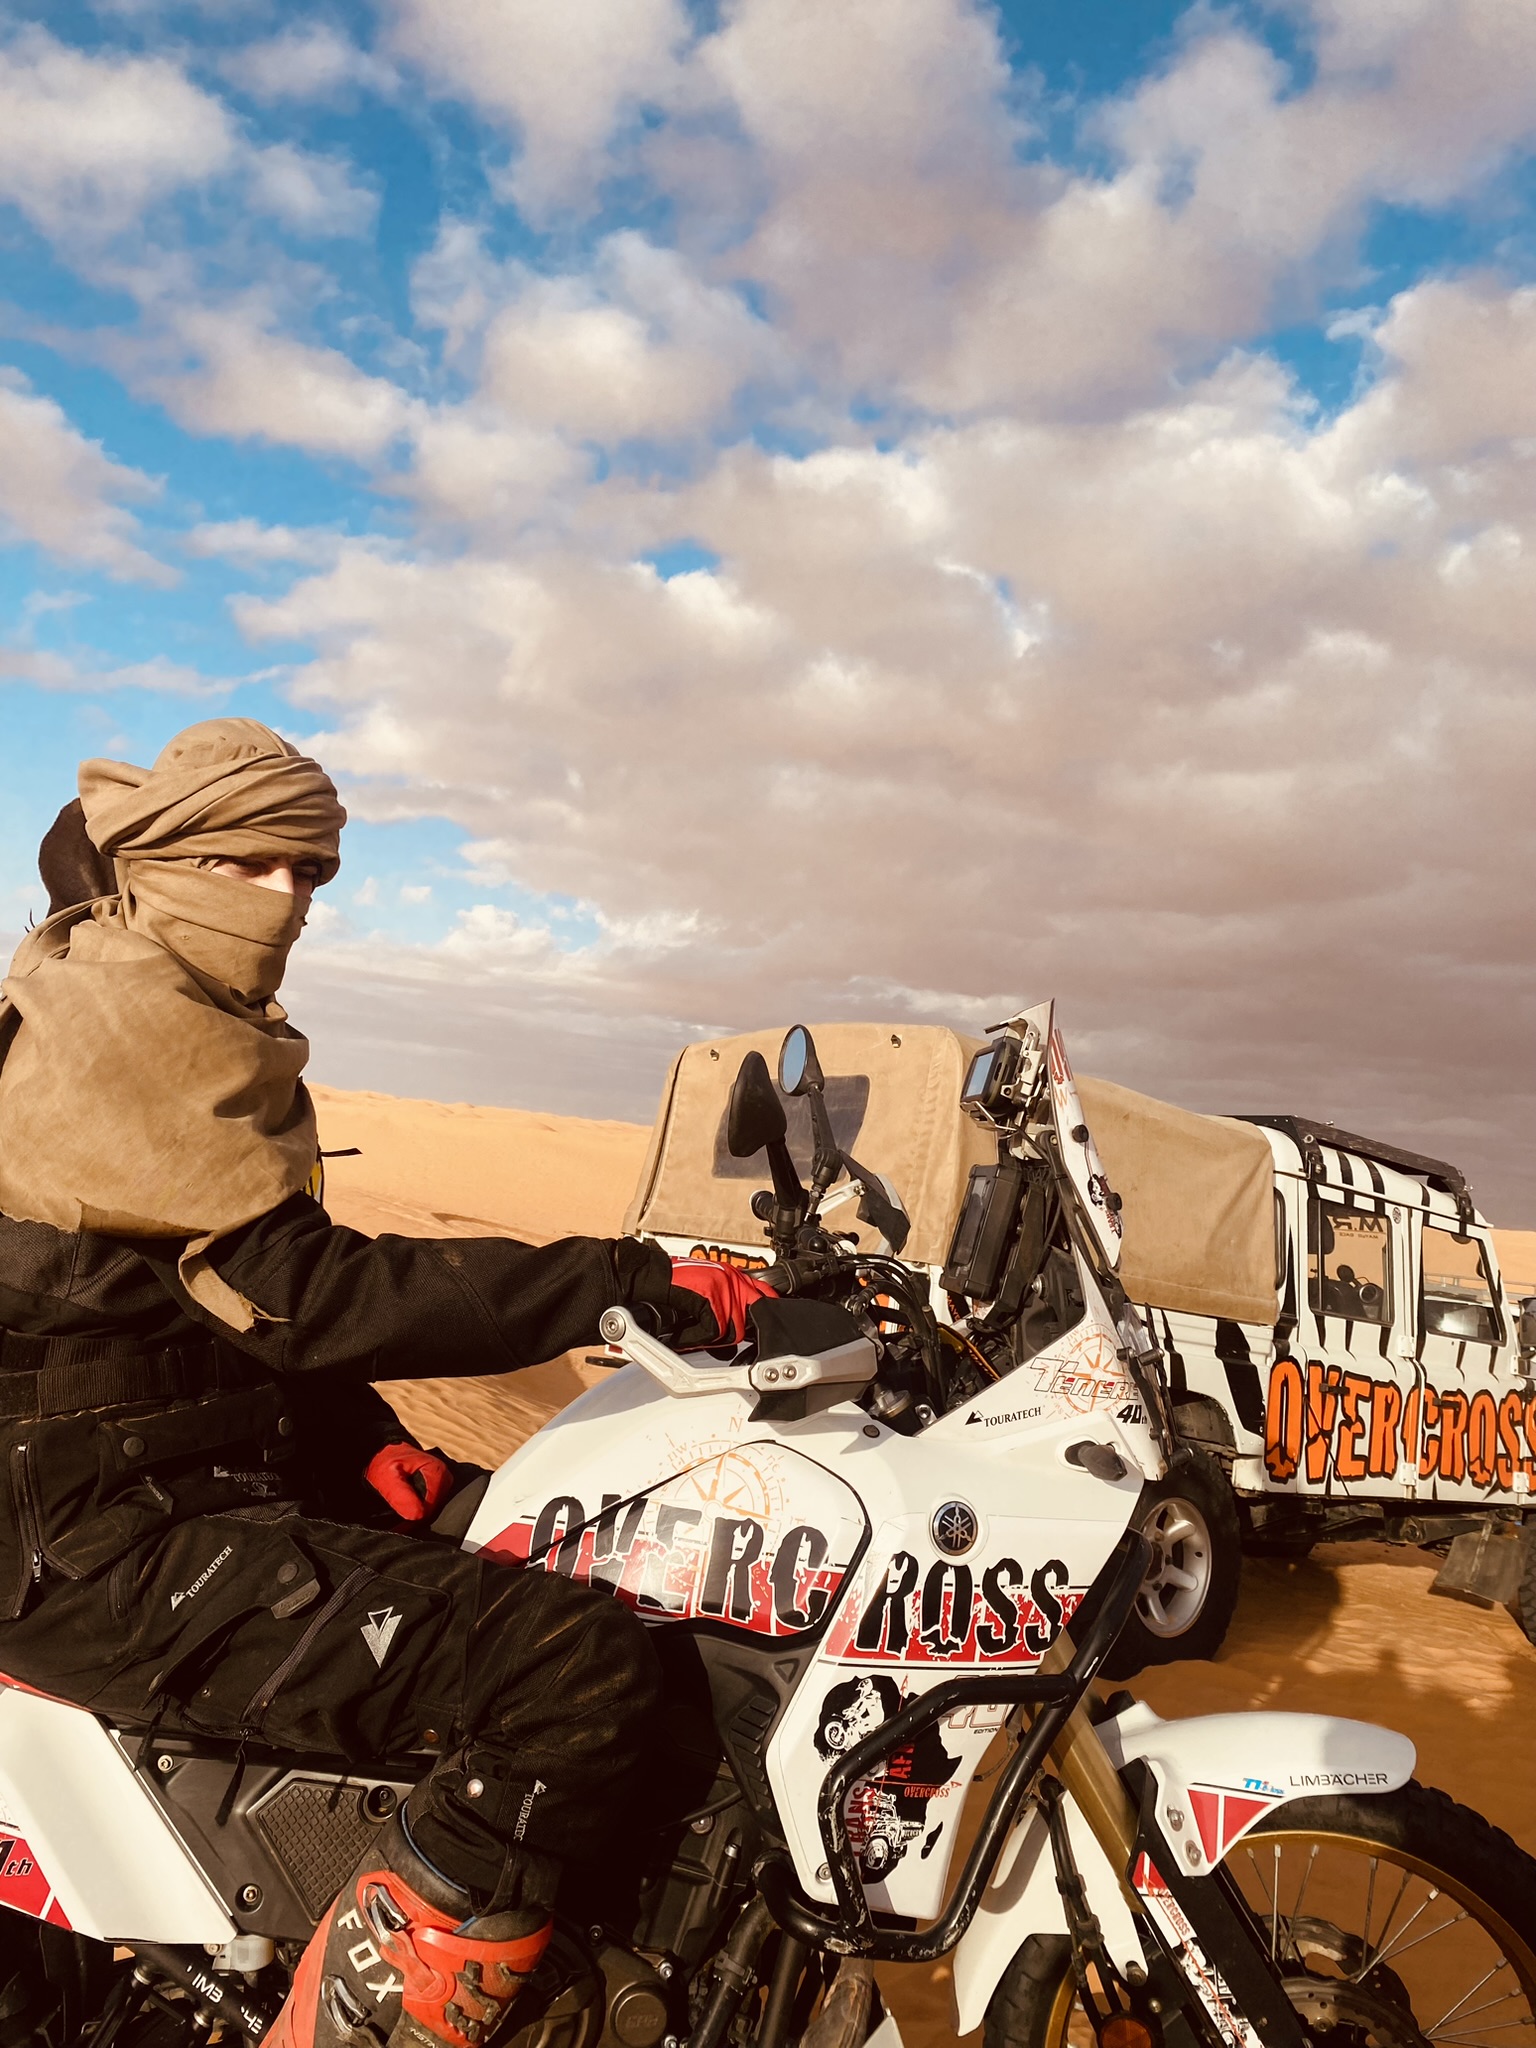 Endruros am Rand der Sahra Tozeur - Mos Espa mit der YAMAHA Leihmaschine auf Motorradreise durch die tunesische sahara